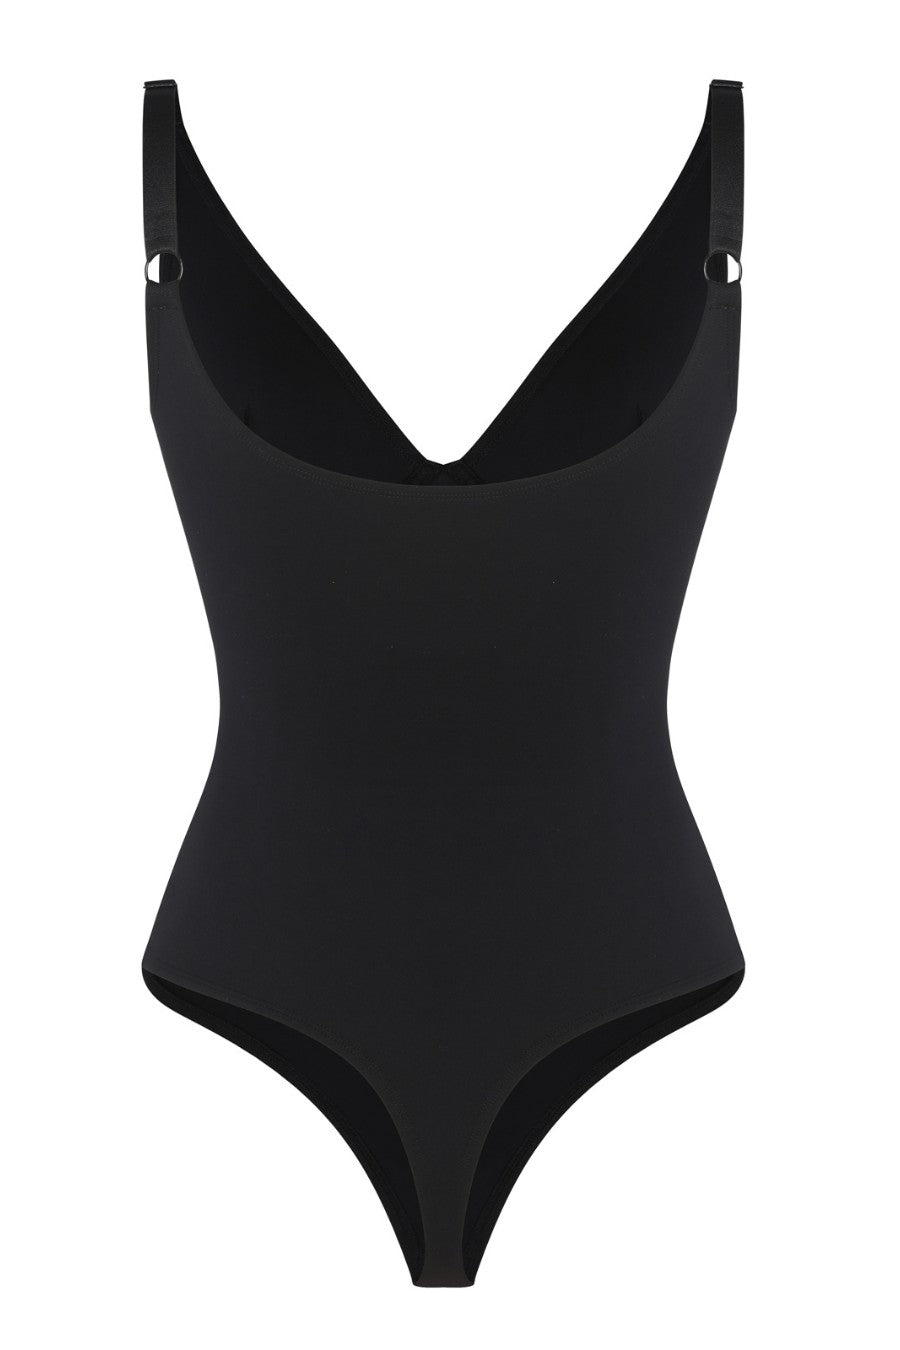 Amelia Scultping Bodysuit - Black Contour Clothing